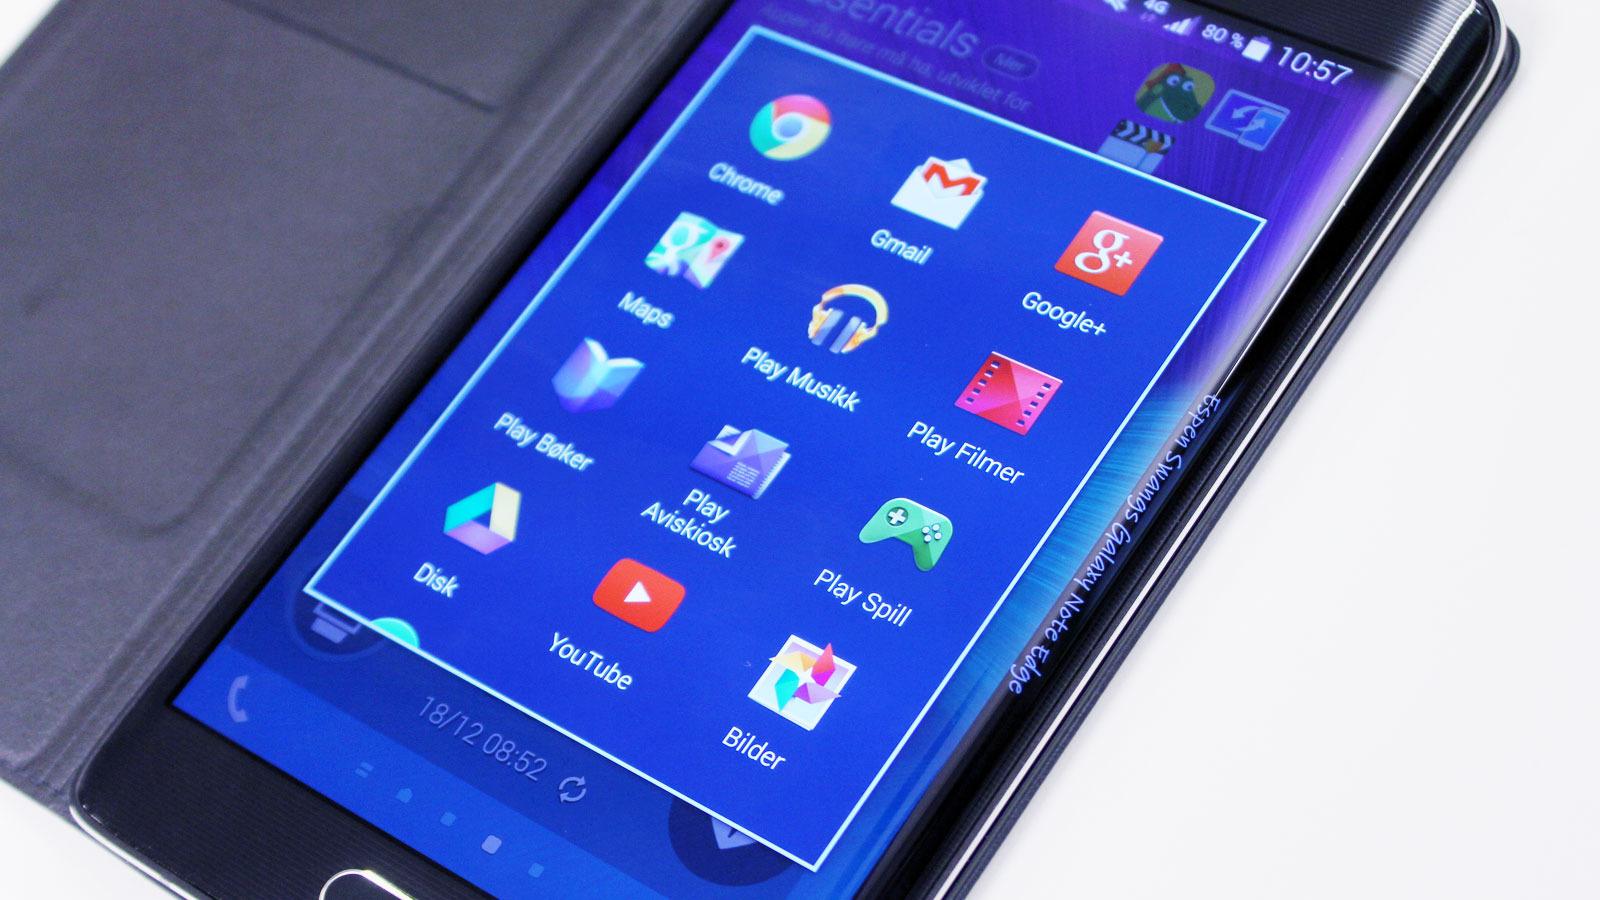 Galaxy Note 4 og Galaxy Note Edge (bildet) kan få oppfølgere om under en måned. Foto: Espen Irwing Swang, Tek.no